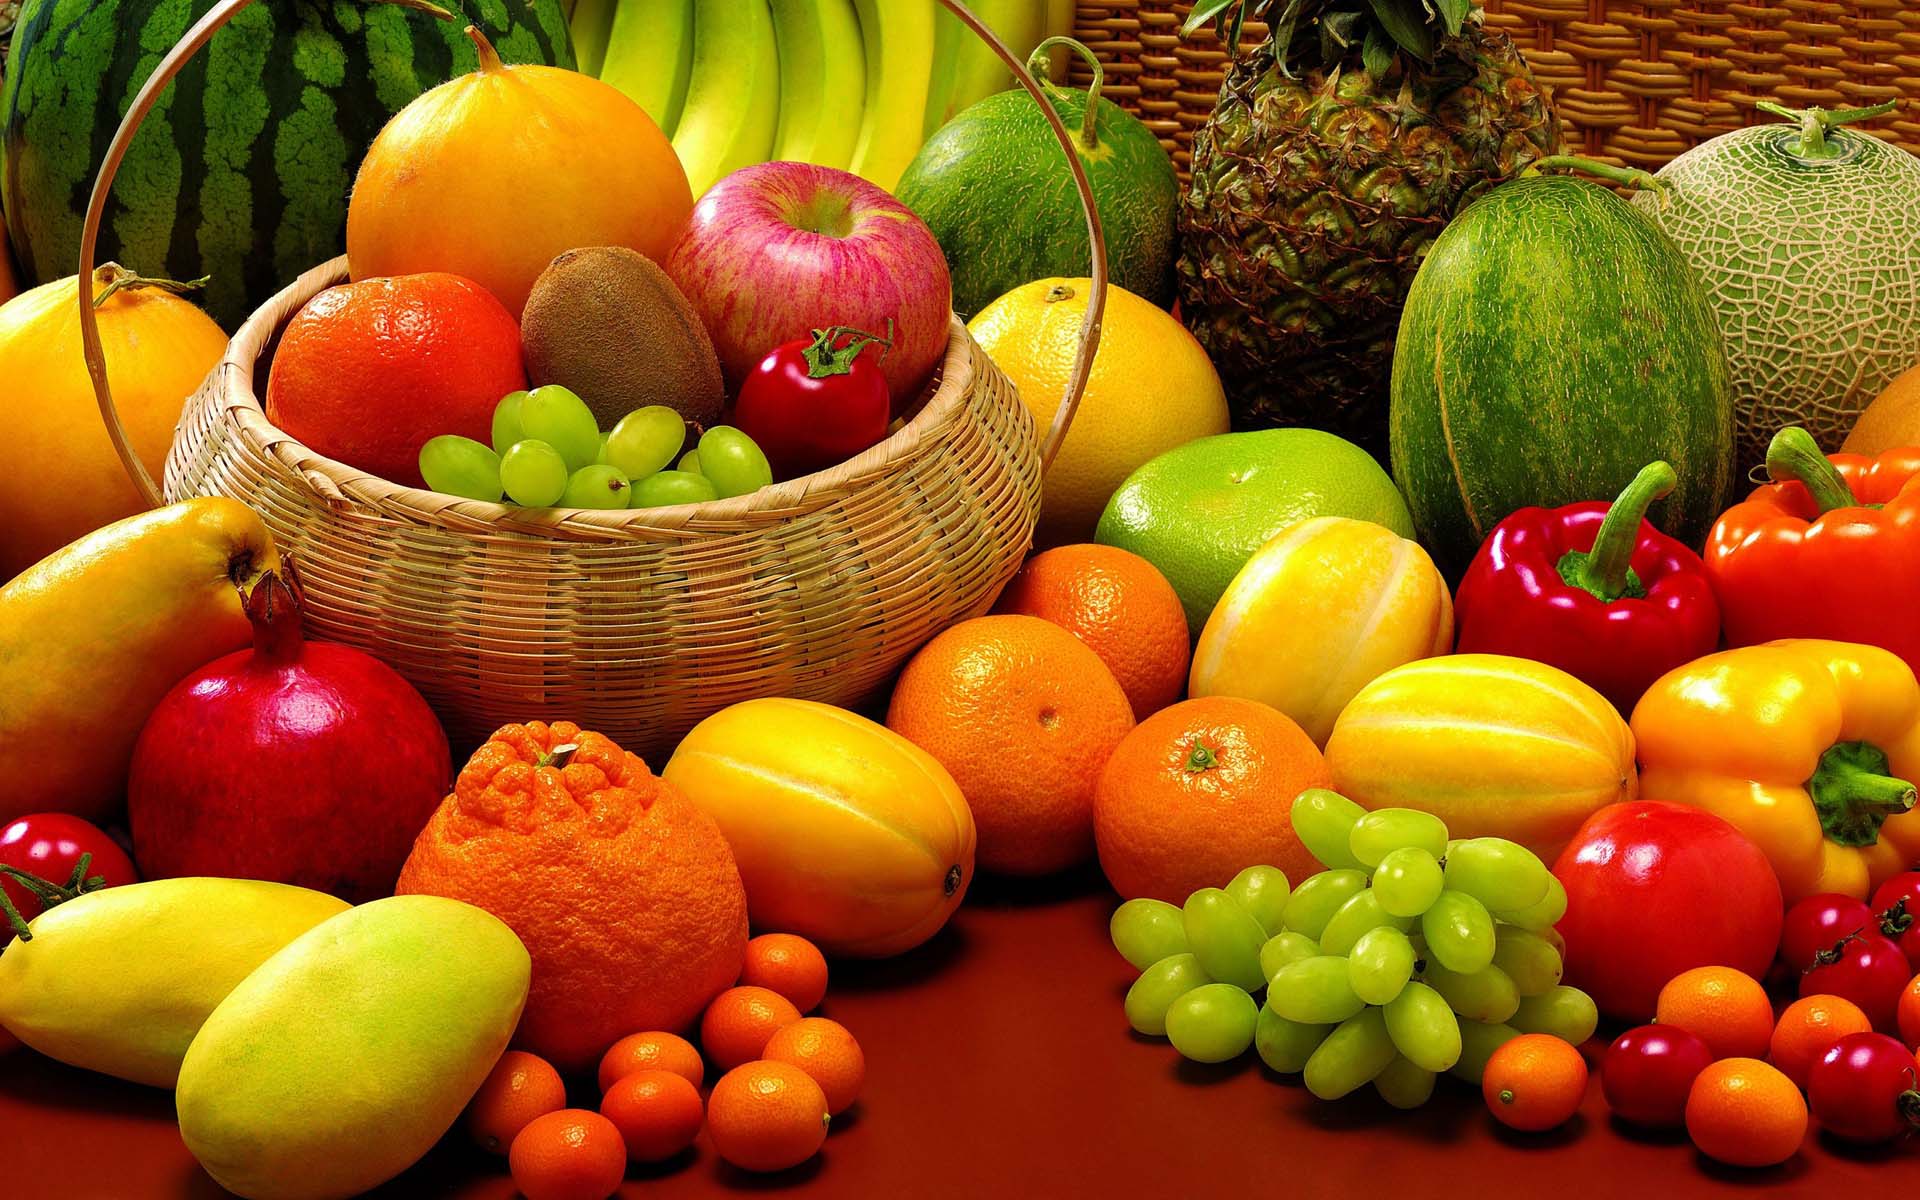 İlkbahar ve yaz aylarında tüketilmesi gereken meyve ve sebzeler